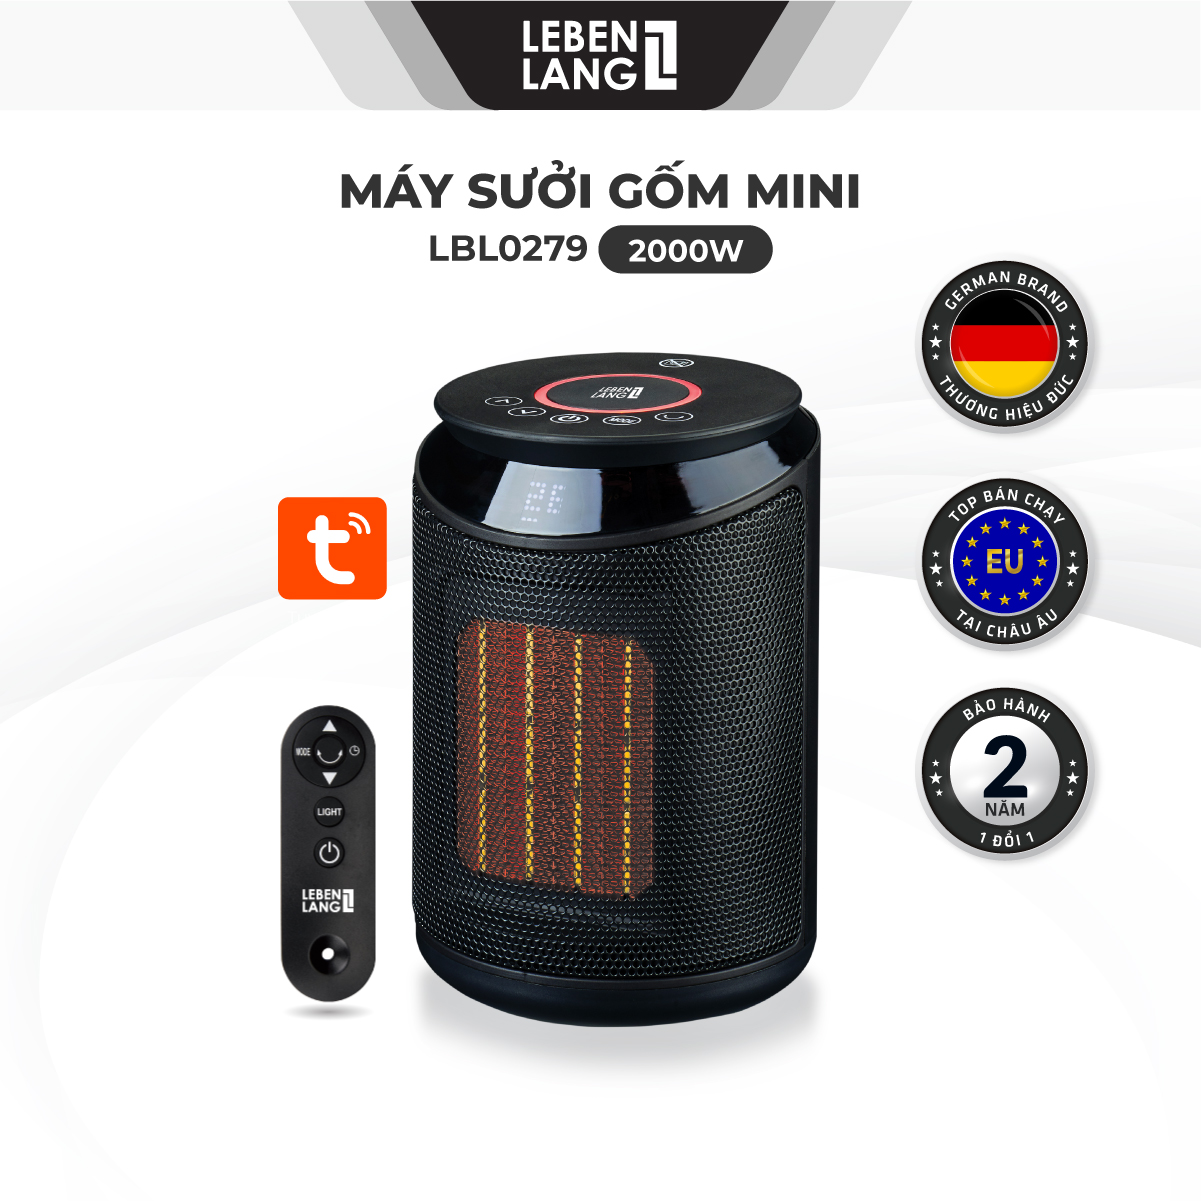 Máy sưởi mini Lebenlang LBL0279, quạt sưởi gốm điện tự ngắt tiết kiệm điện không đốt oxy, an toàn cho gia đình - hàng chính hãng